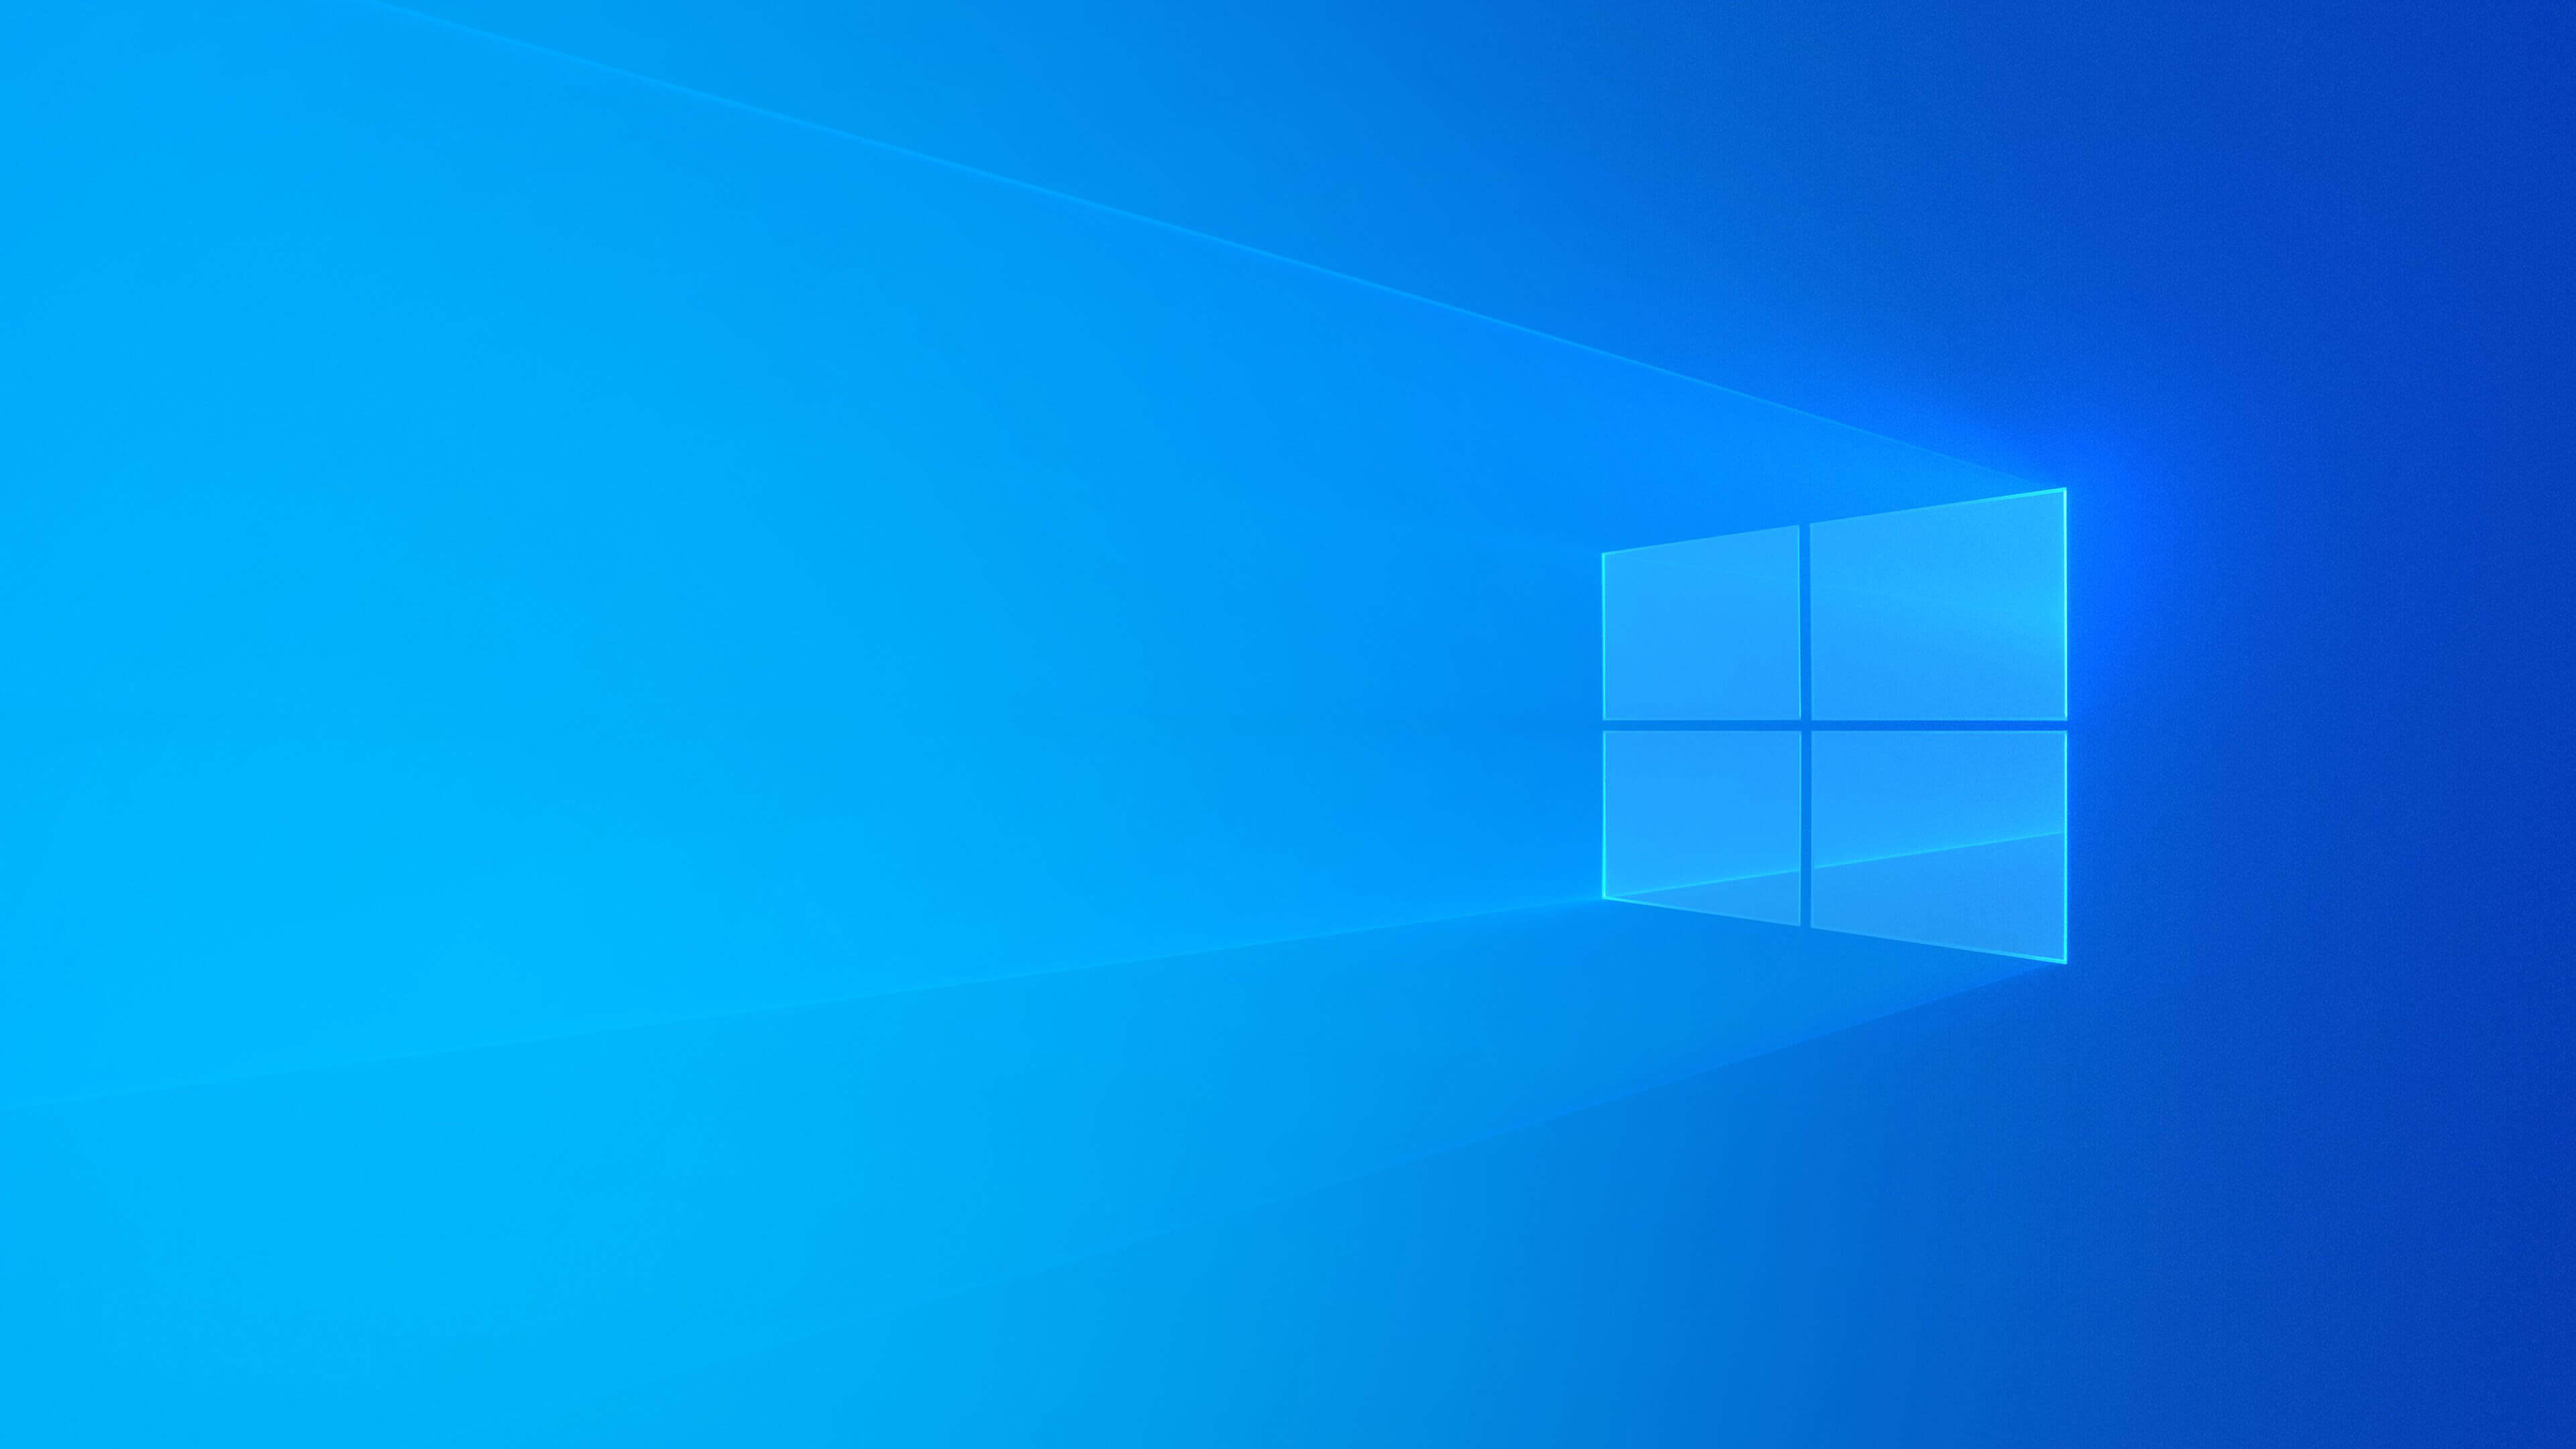 Hình nền Windows 10 xanh 4K: Màu xanh là biểu tượng của sự năng động và sự sống động. Hình nền Windows 10 xanh 4K sẽ mang đến cho bạn một không gian desktop đầy tươi mới và động lực. Với độ phân giải cao, hình nền này đem lại sự sống động cho màn hình desktop của bạn.